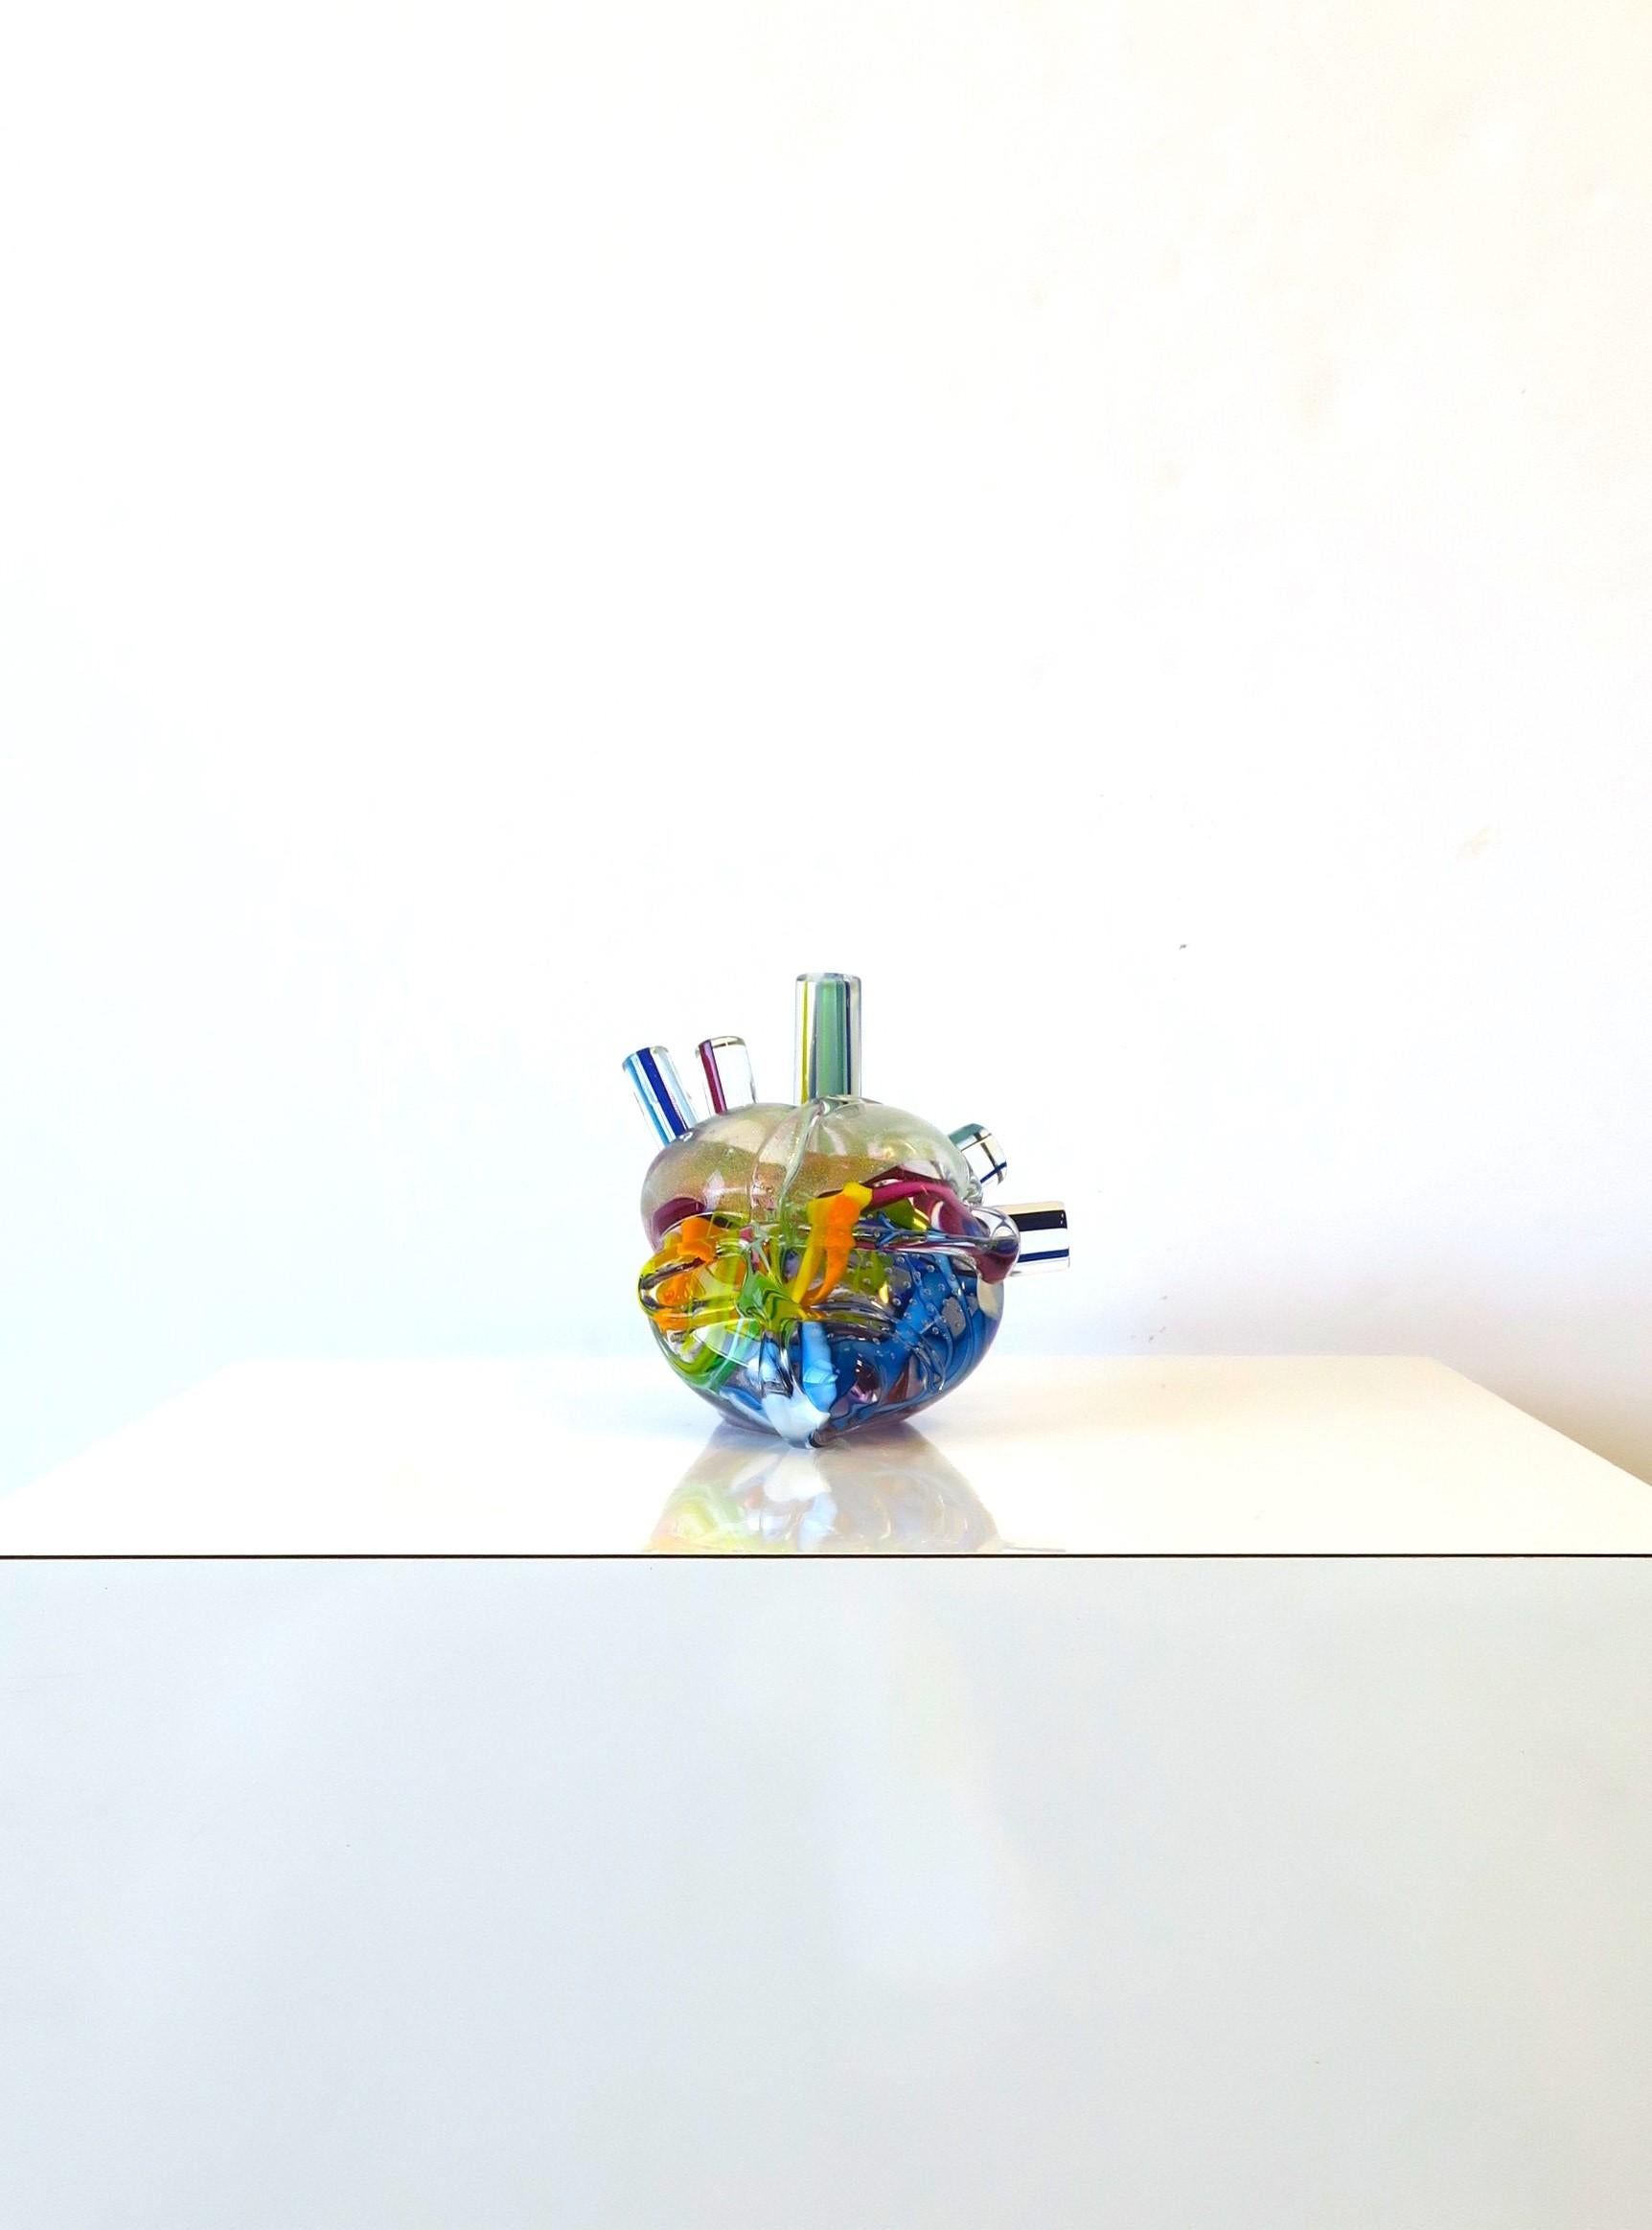 Contemporary Heart of Glass Human Heart Art Glass Sculpture Signed by Artist